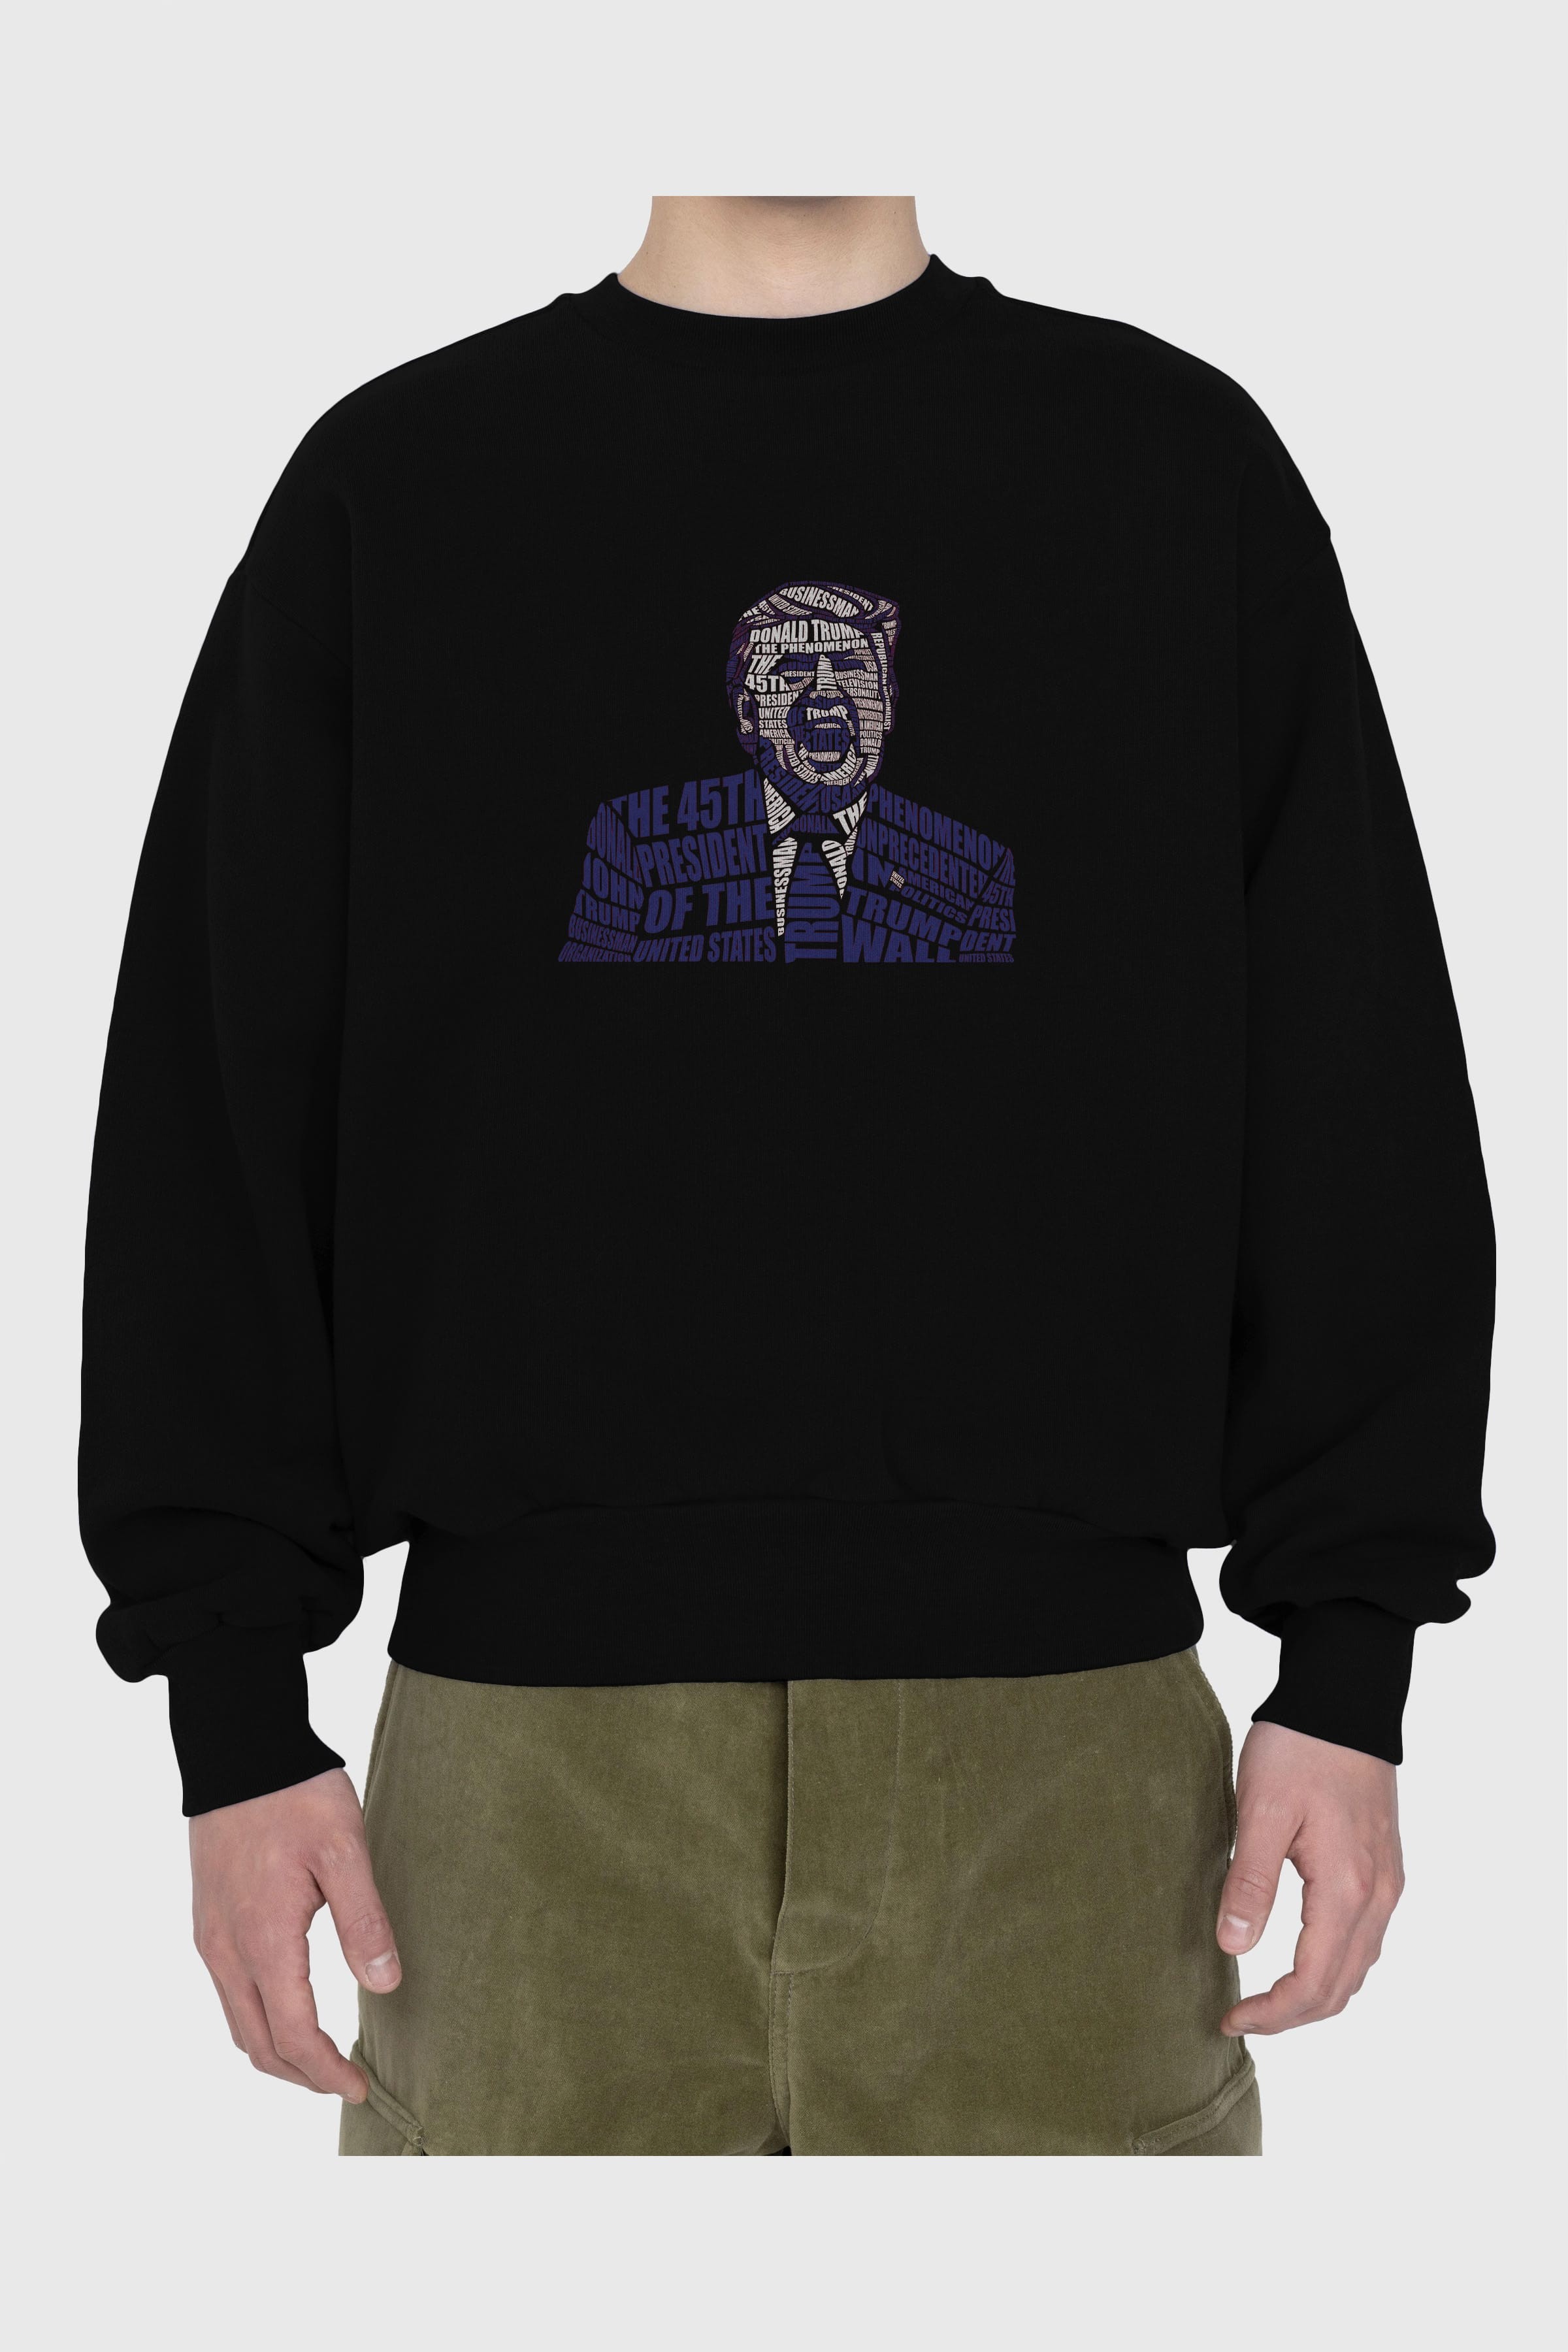 Trump Calligram Ön Baskılı Oversize Sweatshirt Erkek Kadın Unisex